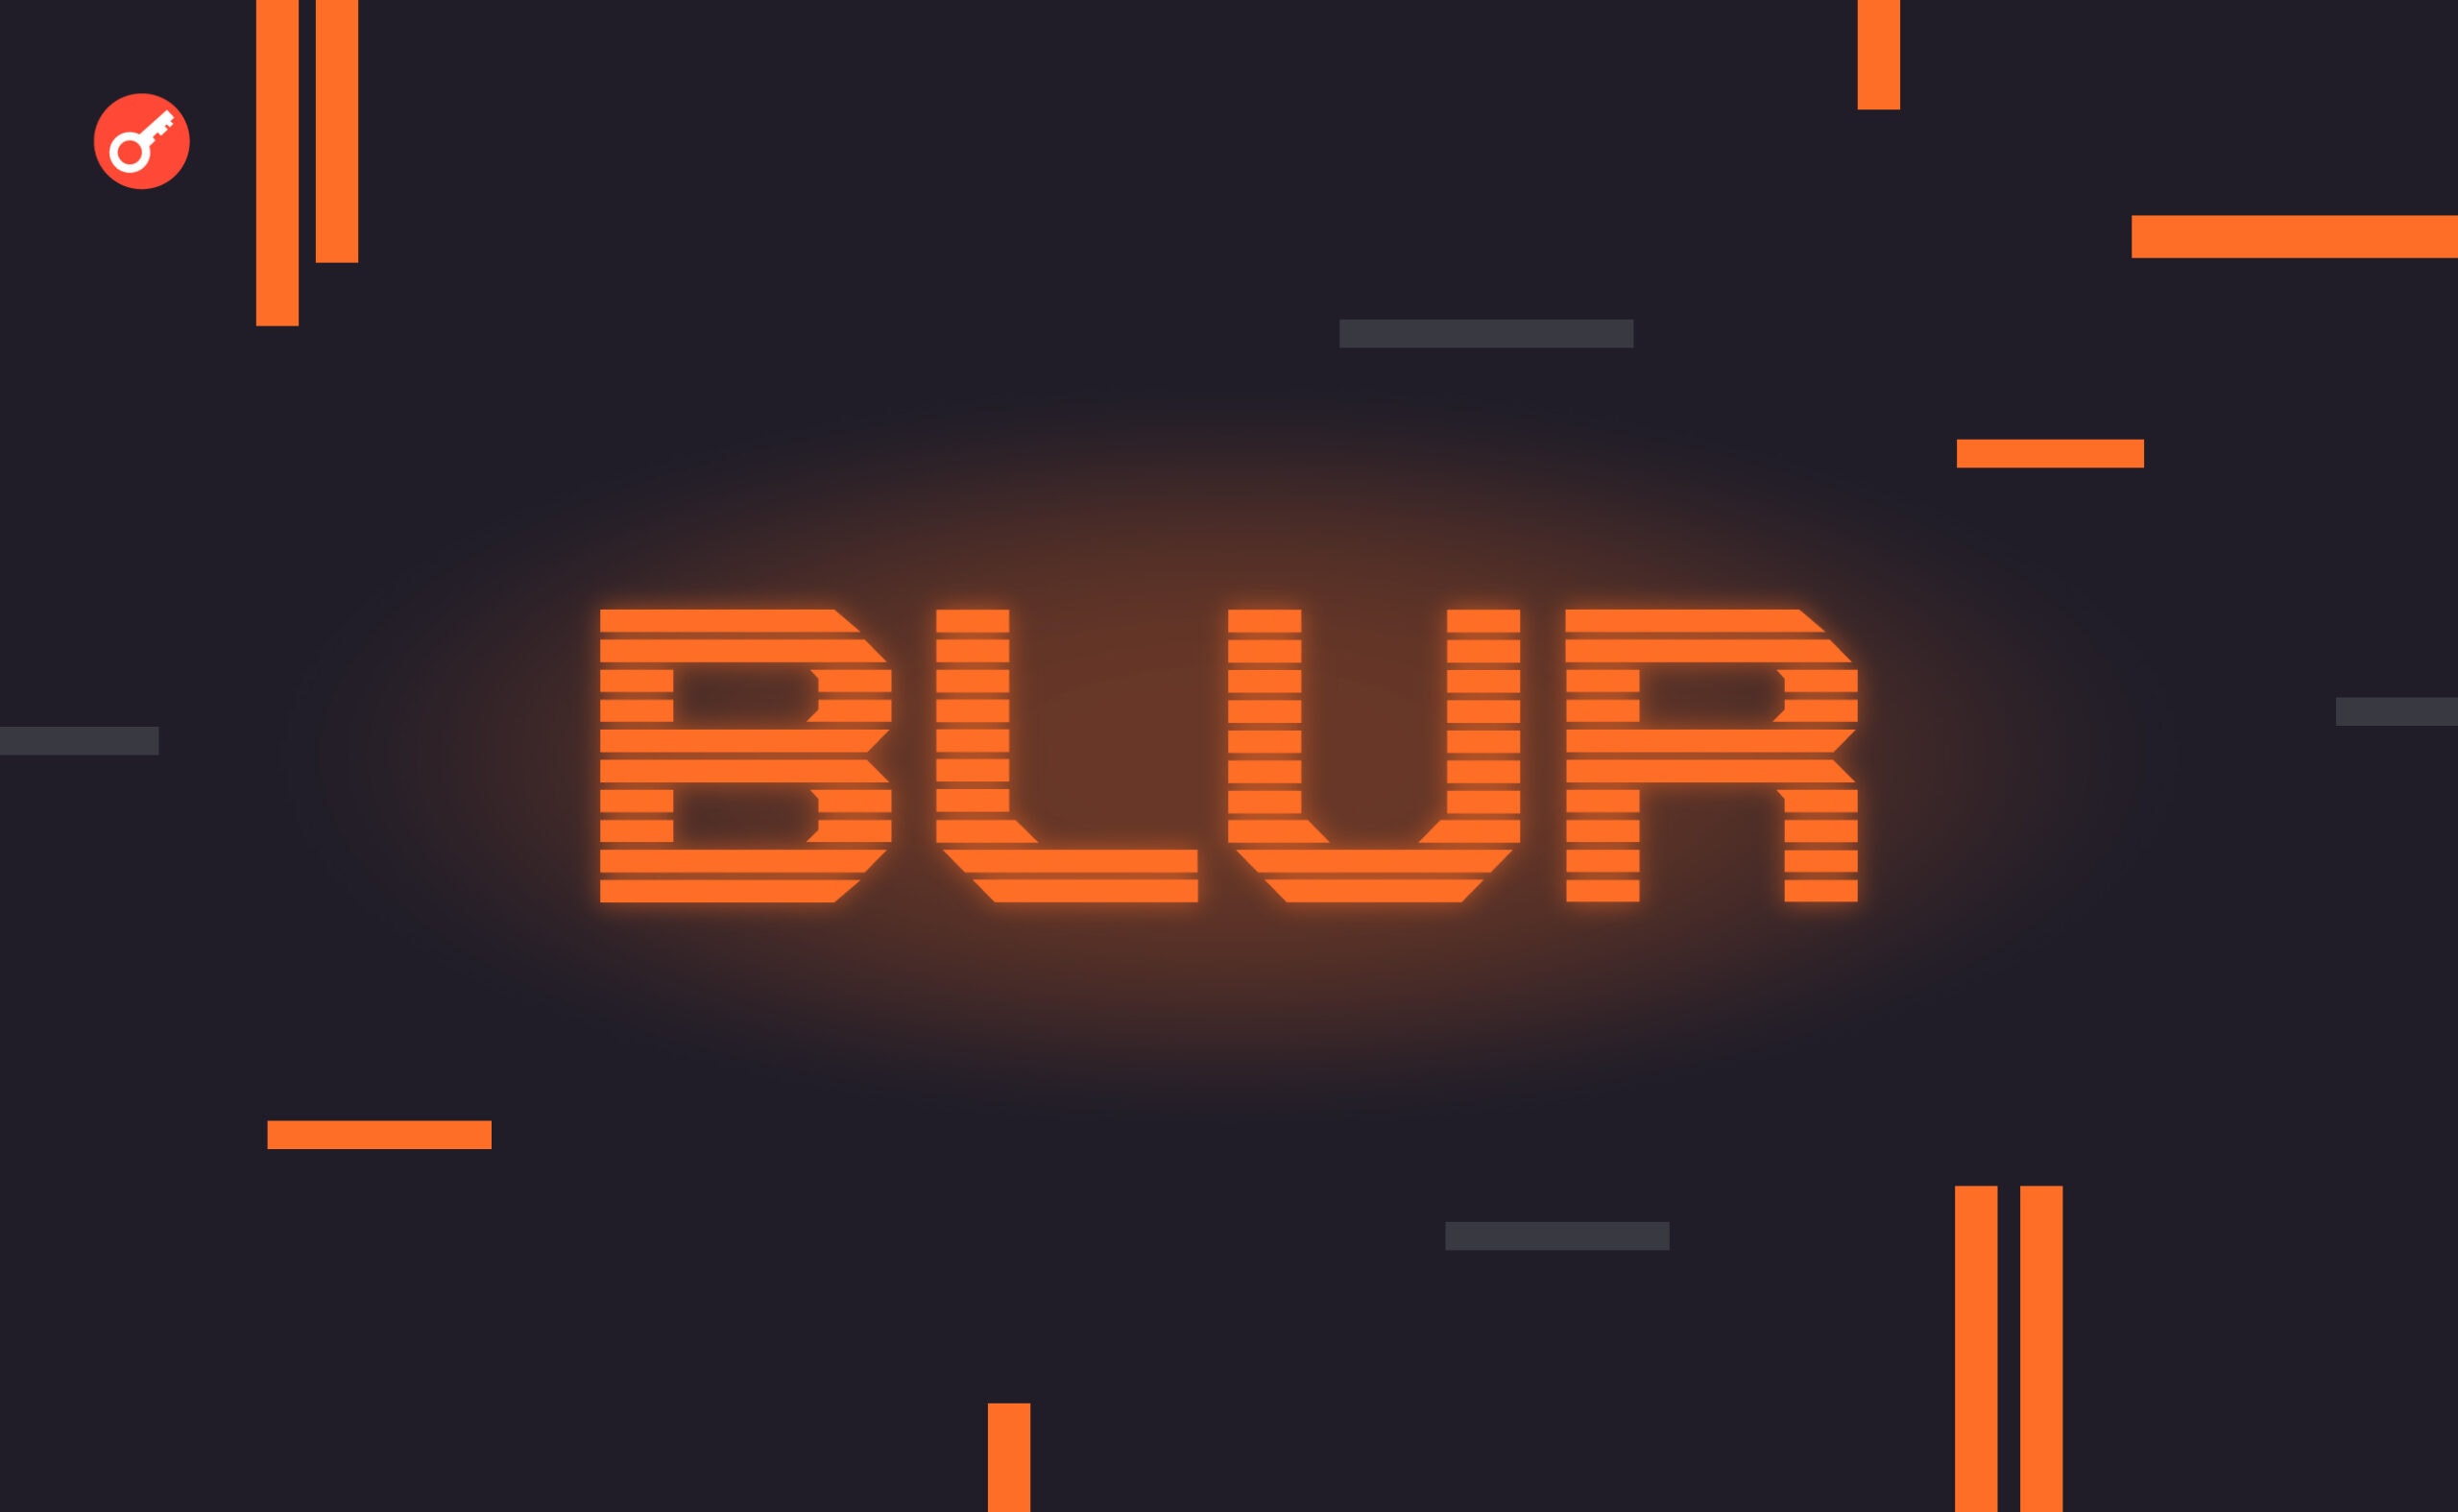 На Blur пришлось почти 80% объема торгов на NFT-рынке. Заглавный коллаж новости.